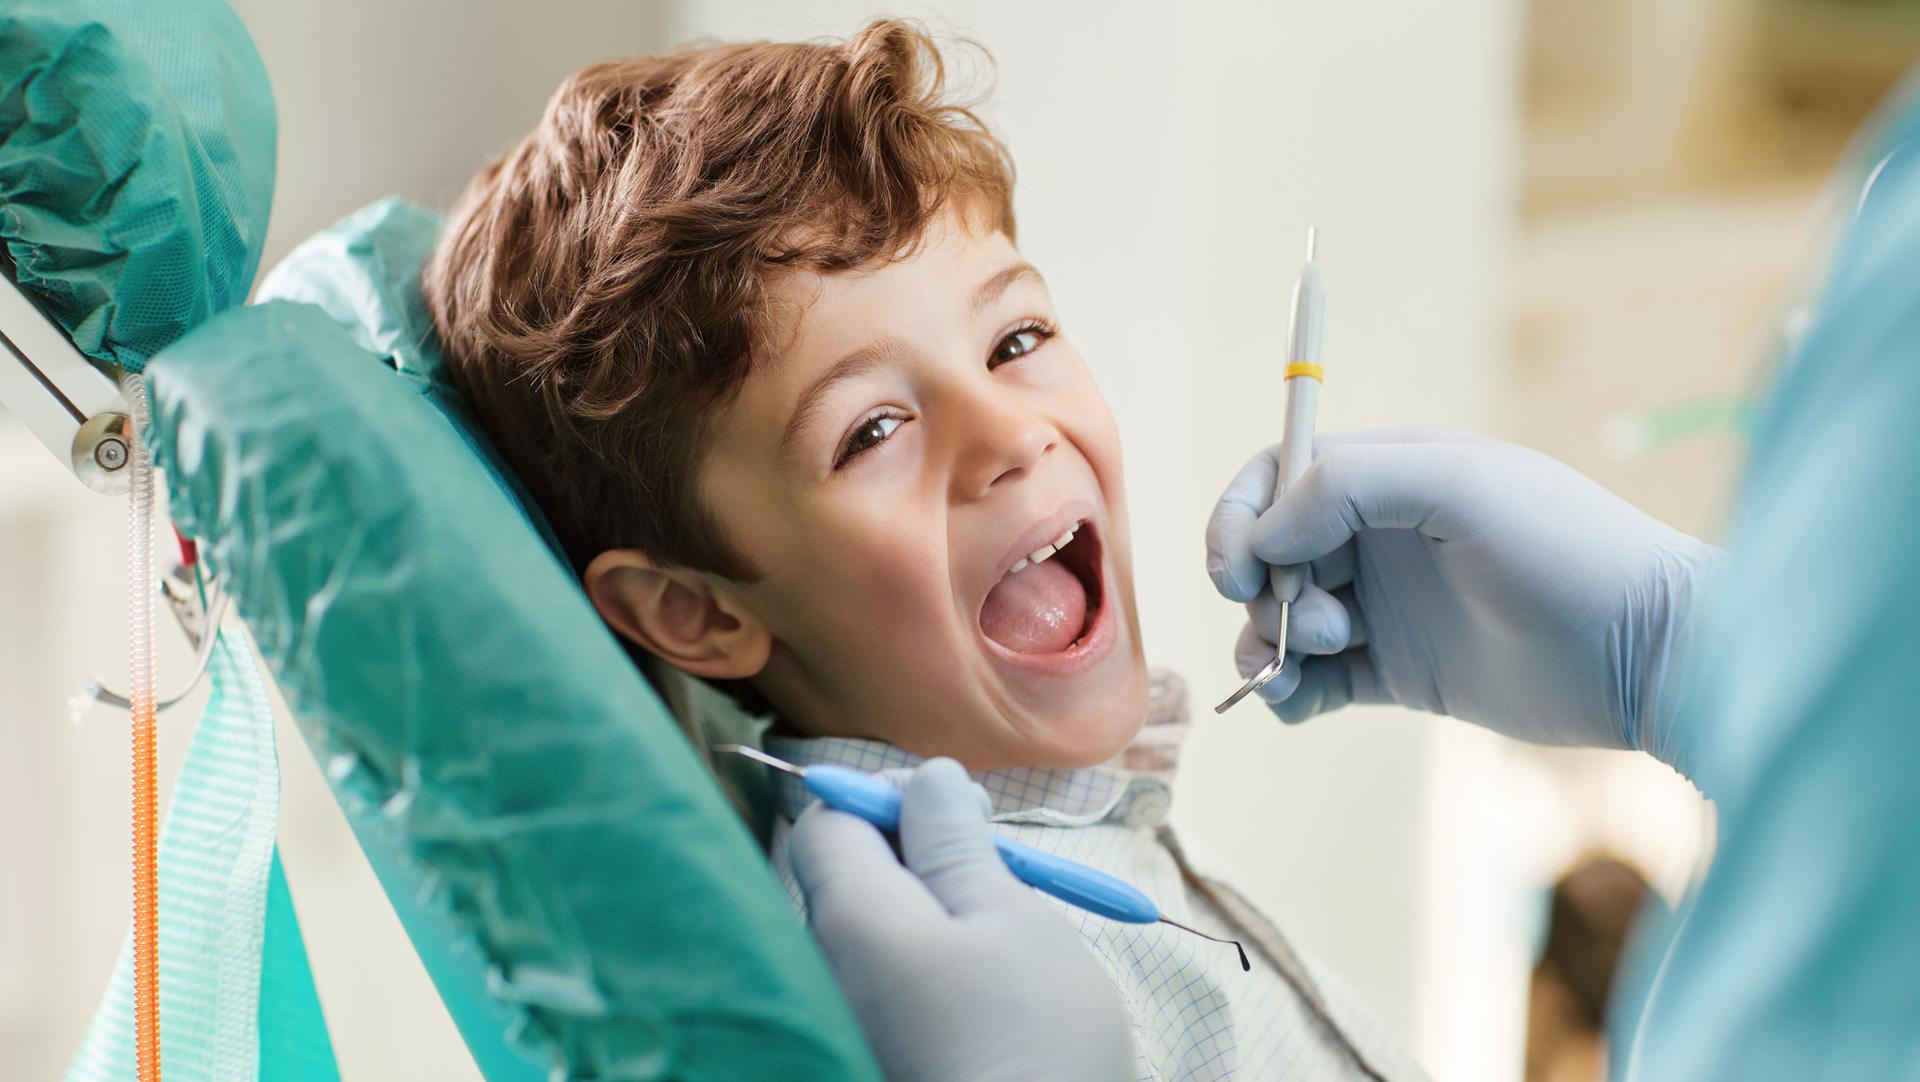 child smiling big during dental checkup